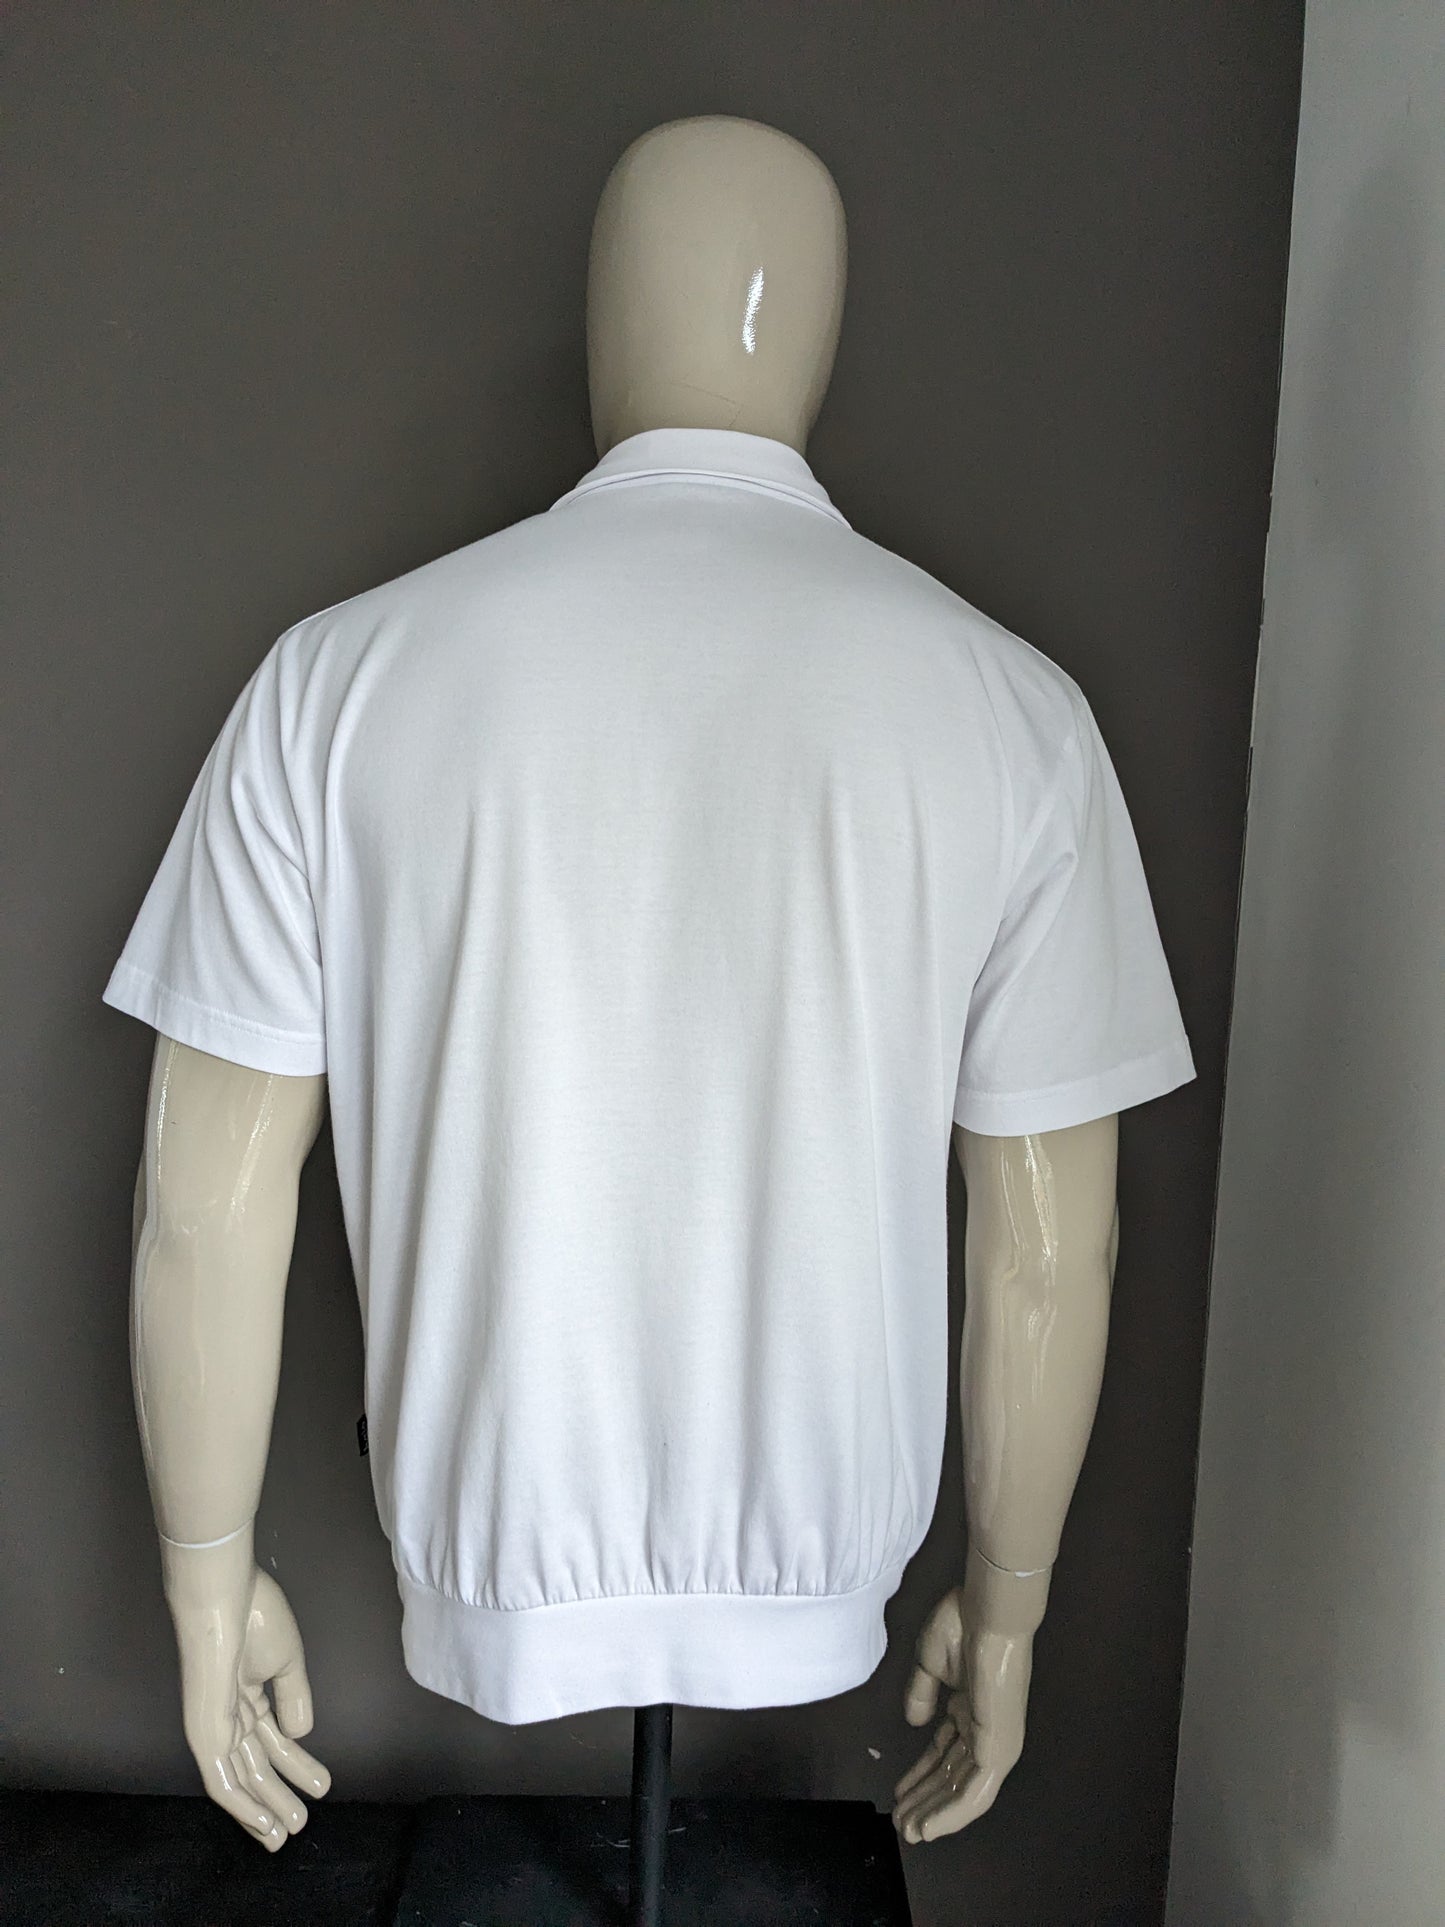 Polo Hajo vintage con fascia elastica. Bianco con stampa. Taglia L / XL.